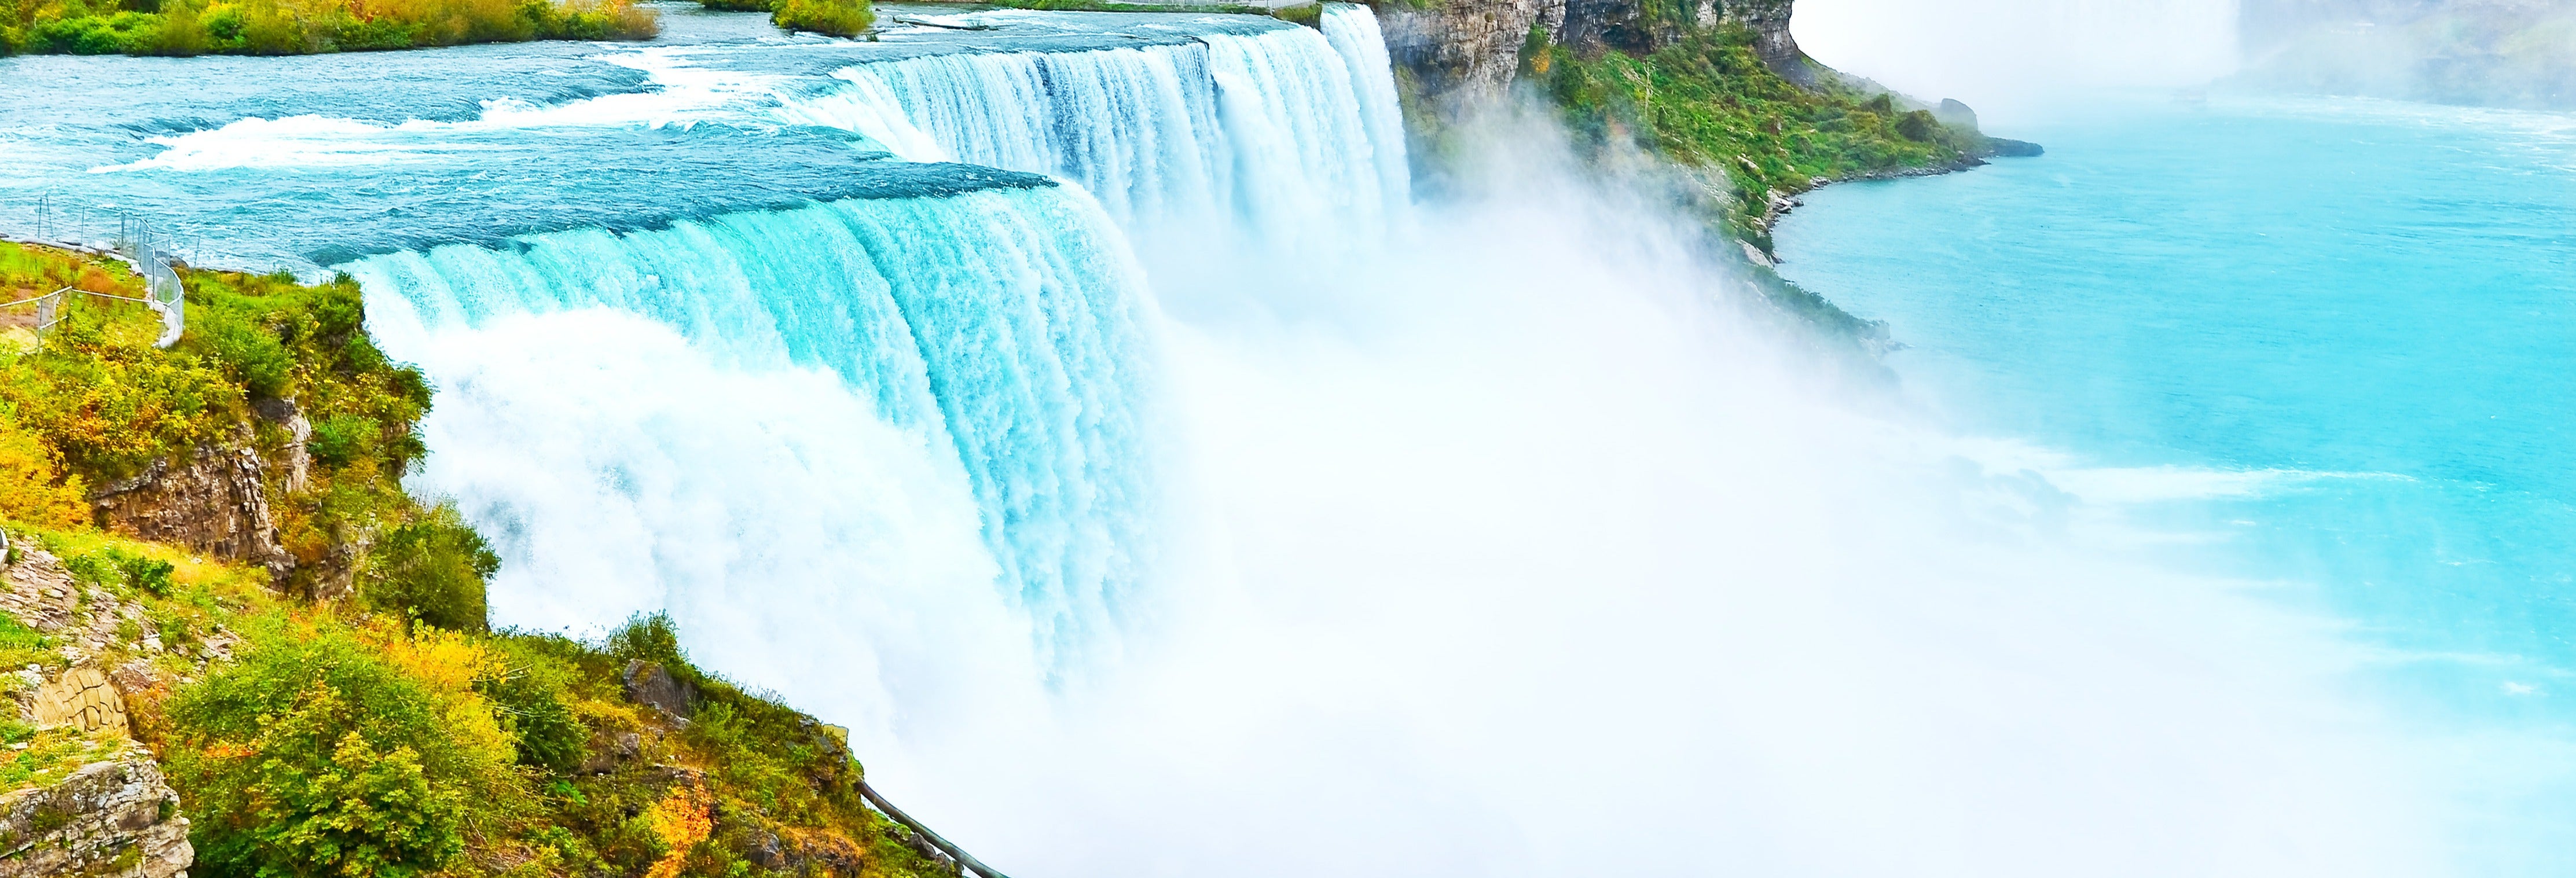 Niagara Falls Guided Tour